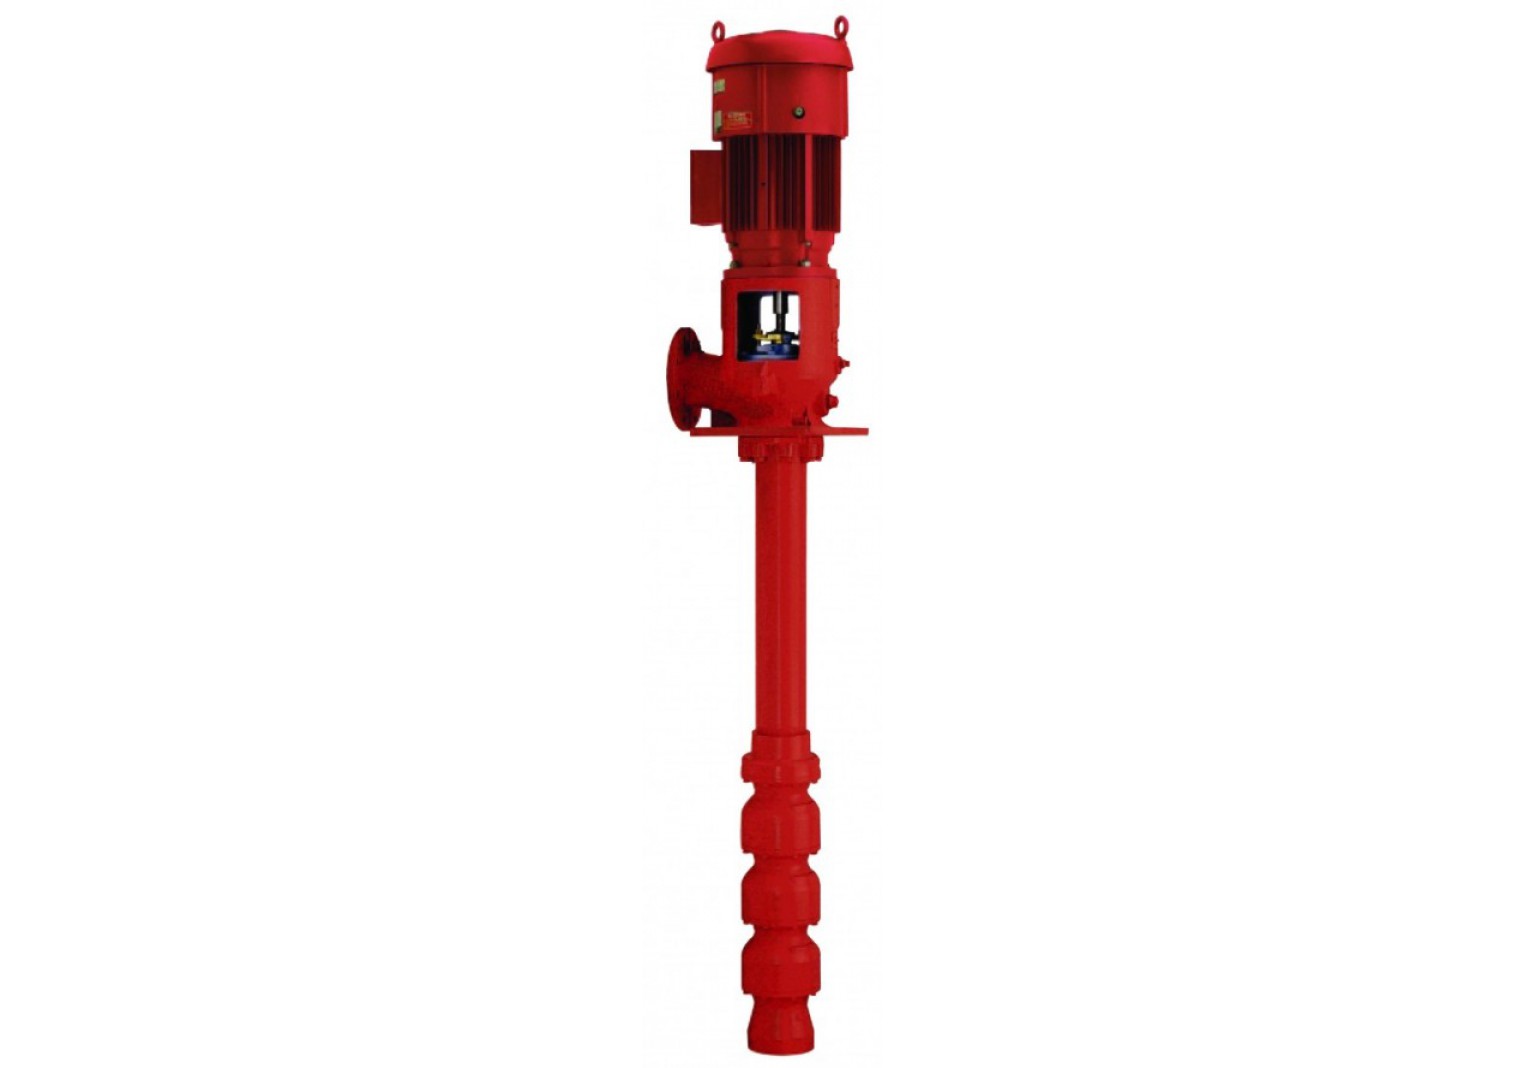 NFPA20 Submersible Vertical Turbine Fire Pump 1000 GPM